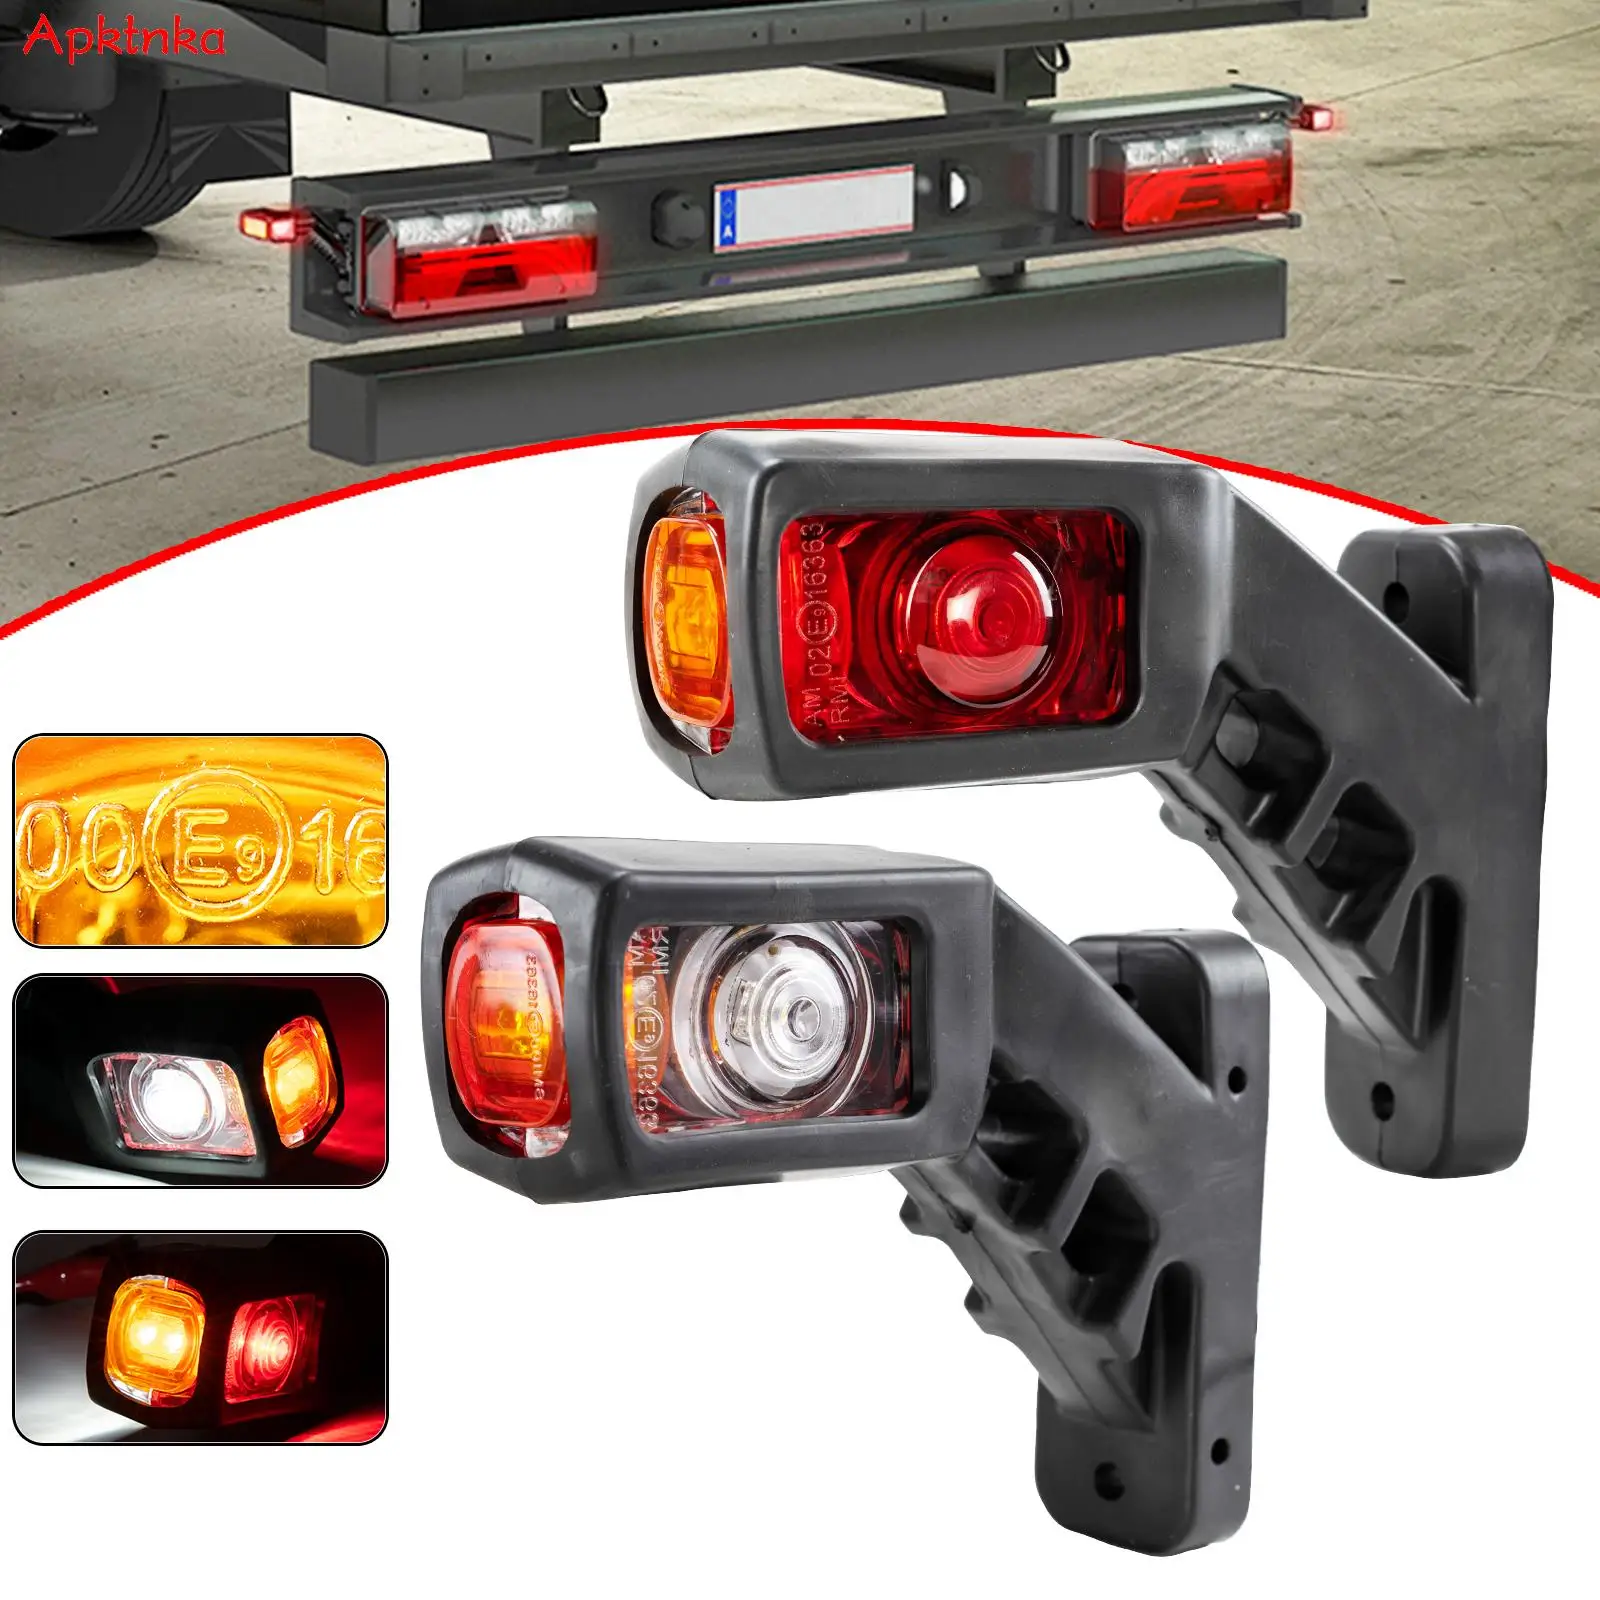 2 led indicador de luz lateral para caminhão, caminhão, caminhão, caminhão, carro, rv, sinalização traseira, lâmpada de posição 3 face, vermelho, âmbar, branco